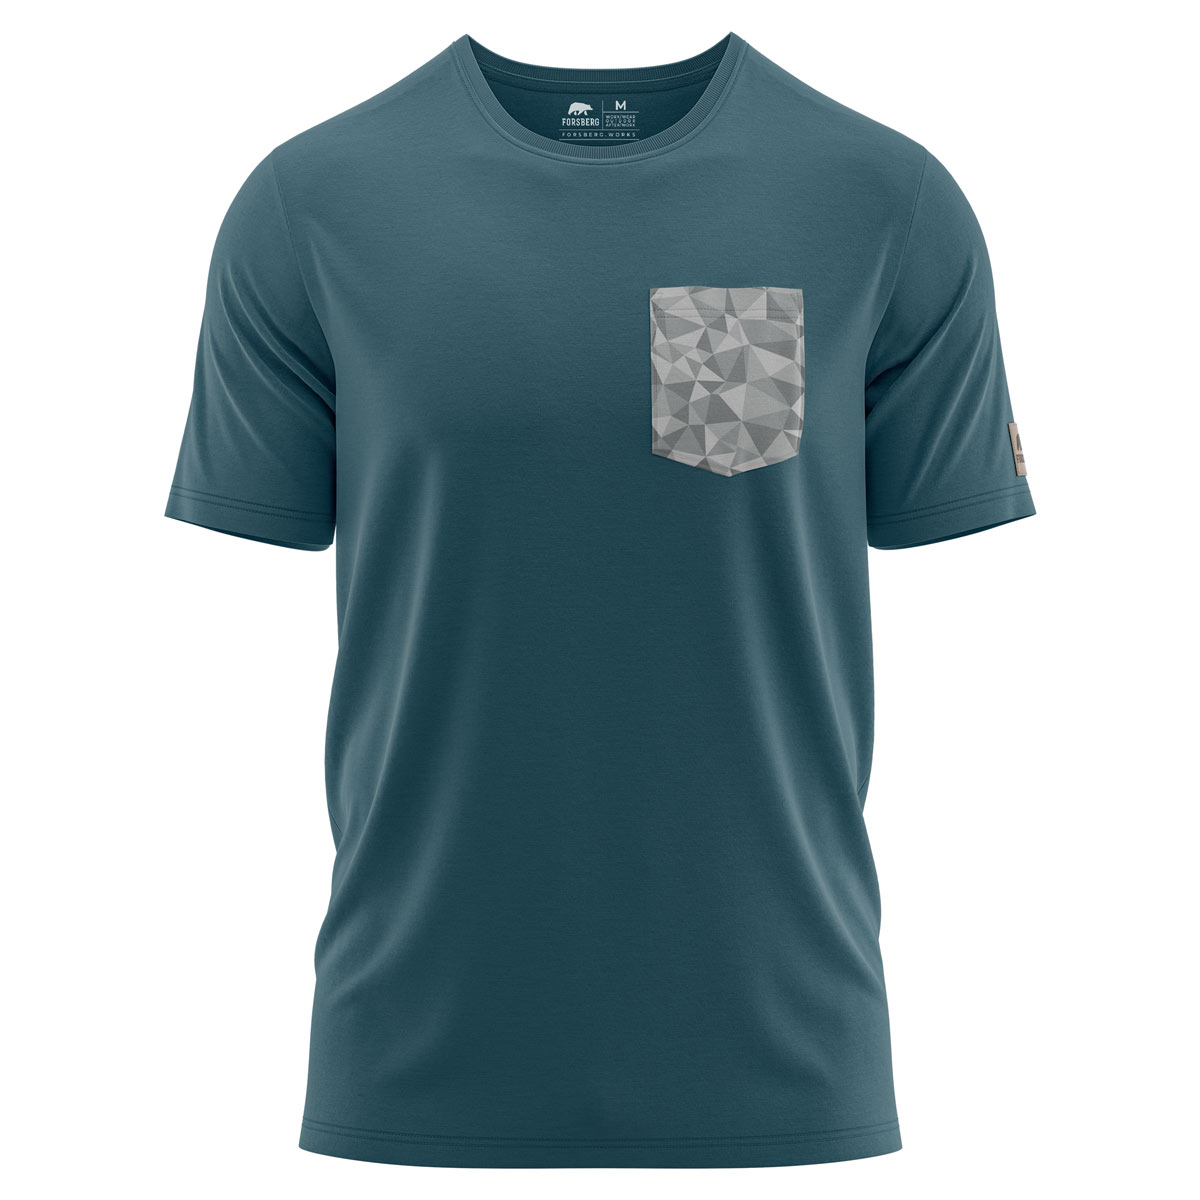 FORSBERG T-Shirt mit Brusttasche im polygonen Design weiss, petrol - 2